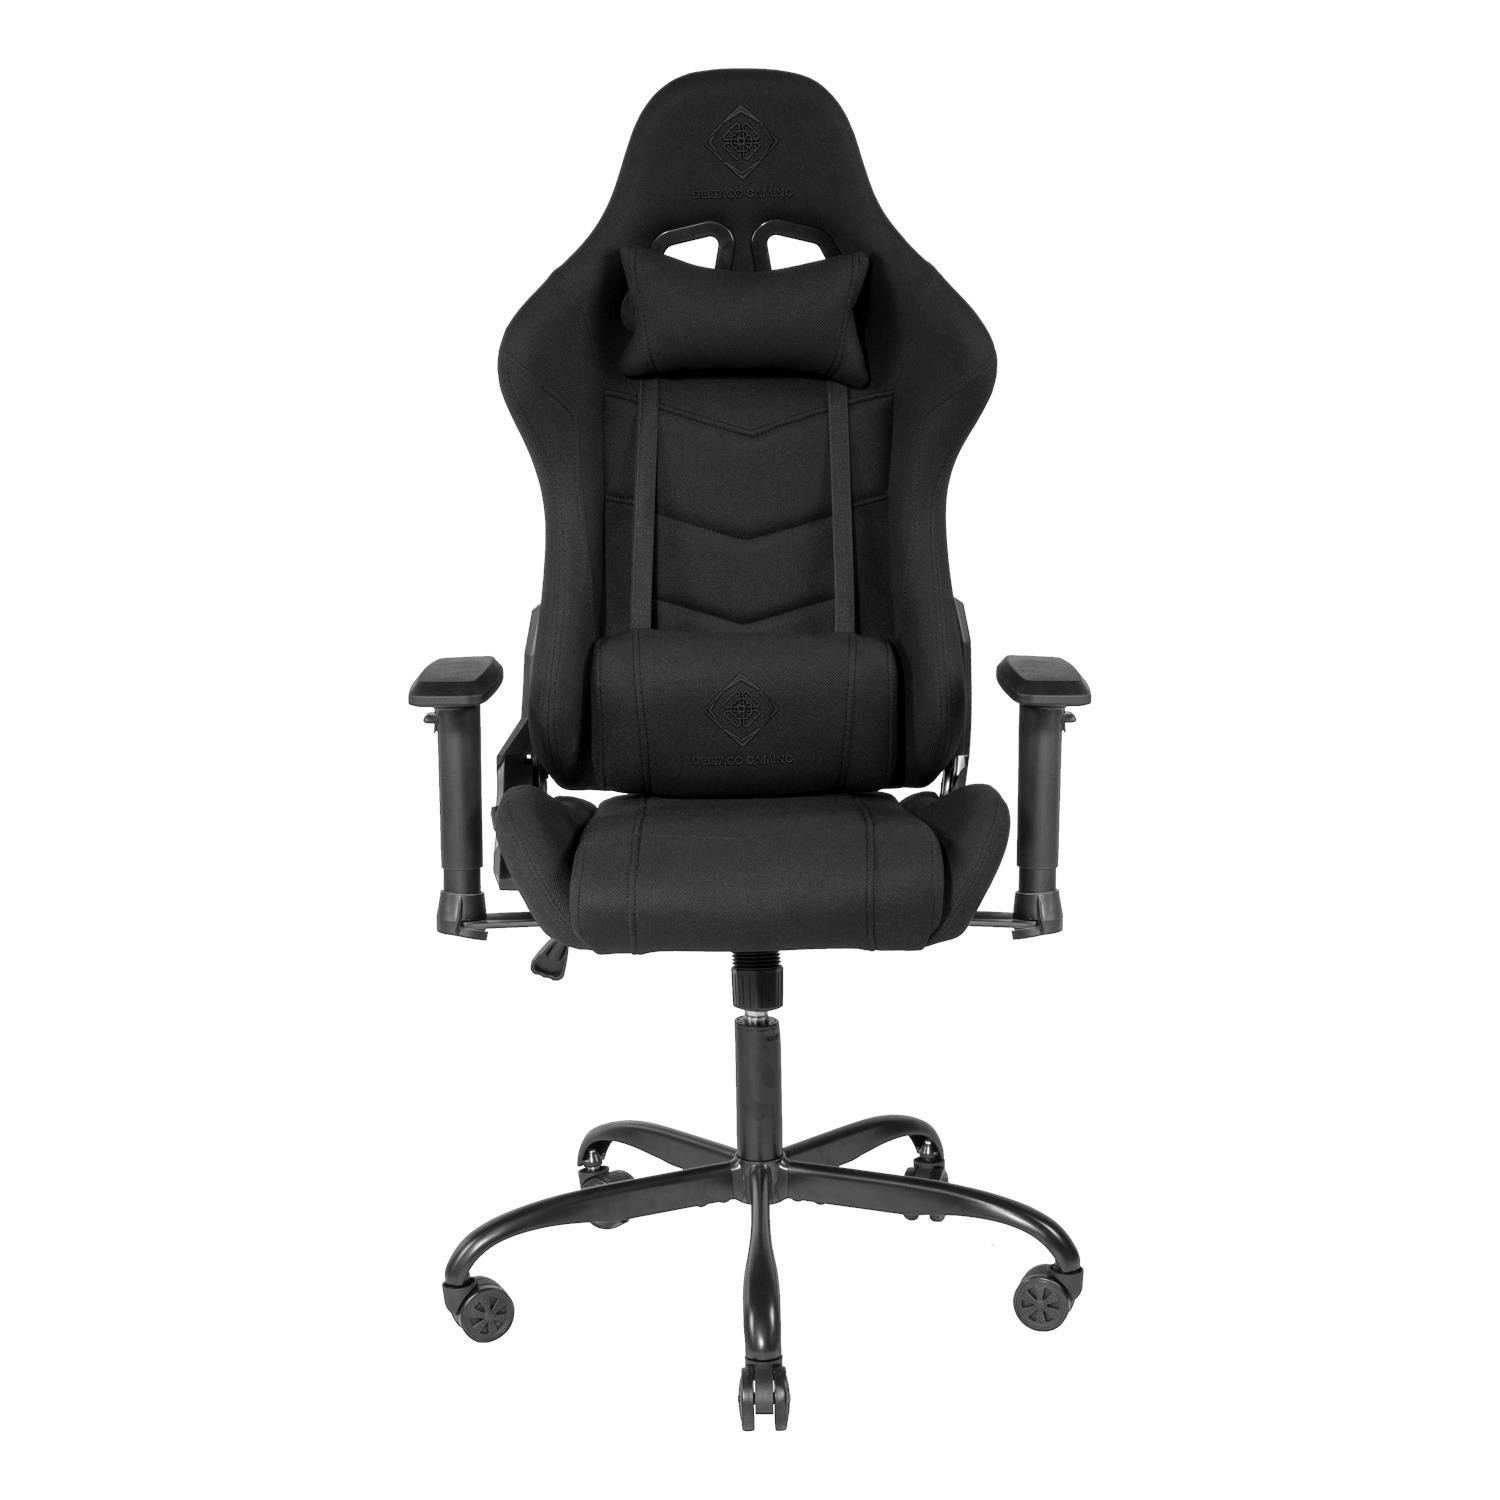 Stuhl 5 Gamer 110kg Jumbo (kein Kissen schwarz Set), Gaming-Stuhl Herstellergarantie DELTACO Stoff, Stuhl Canvas Jahre Canvas robuster Rückenlehne, hohe Gaming